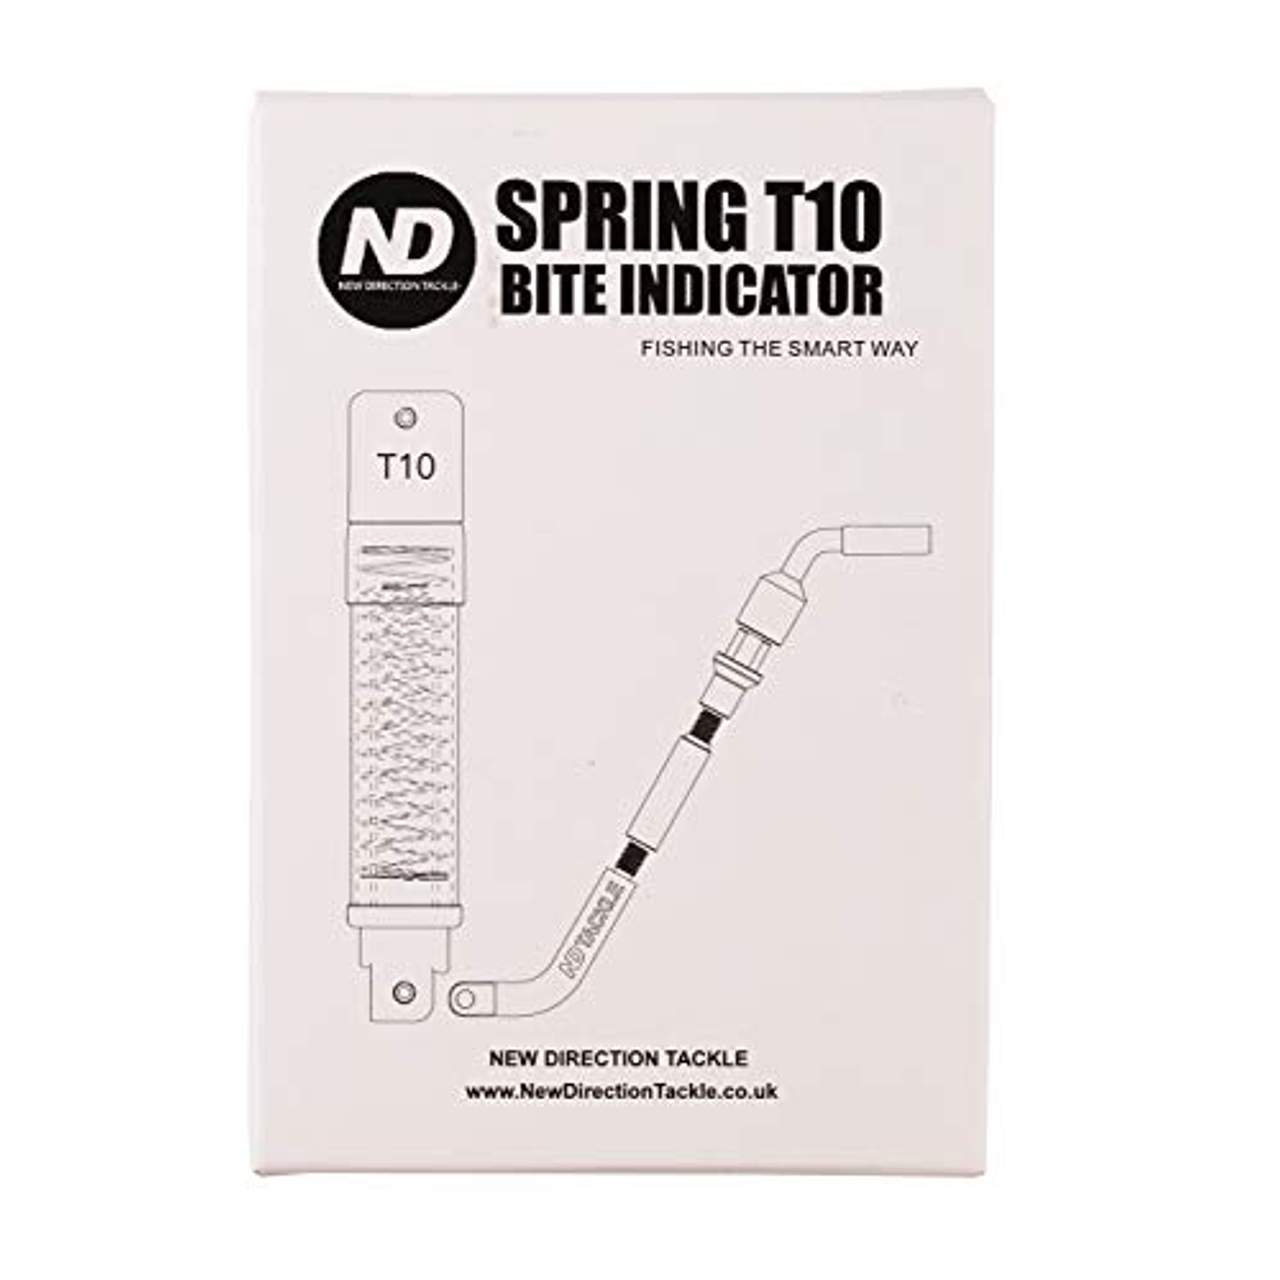 New Direction Tackle Spring Bite Indicator Bissanzeiger Swinger T10s Bobbin